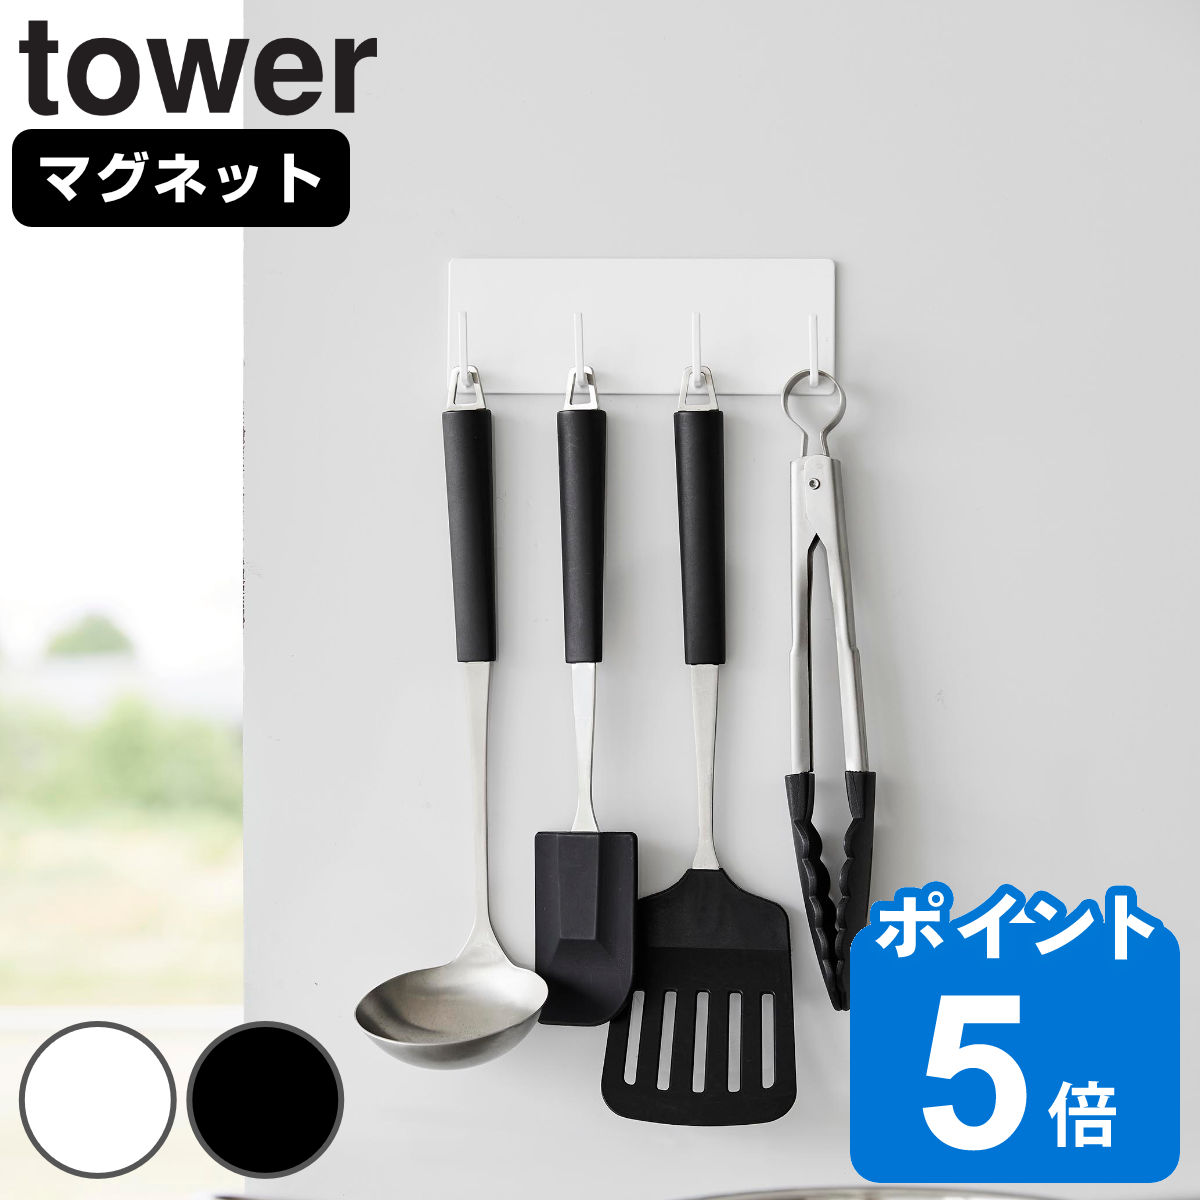 山崎実業 tower マグネットキッチンツールフック タワー 4連